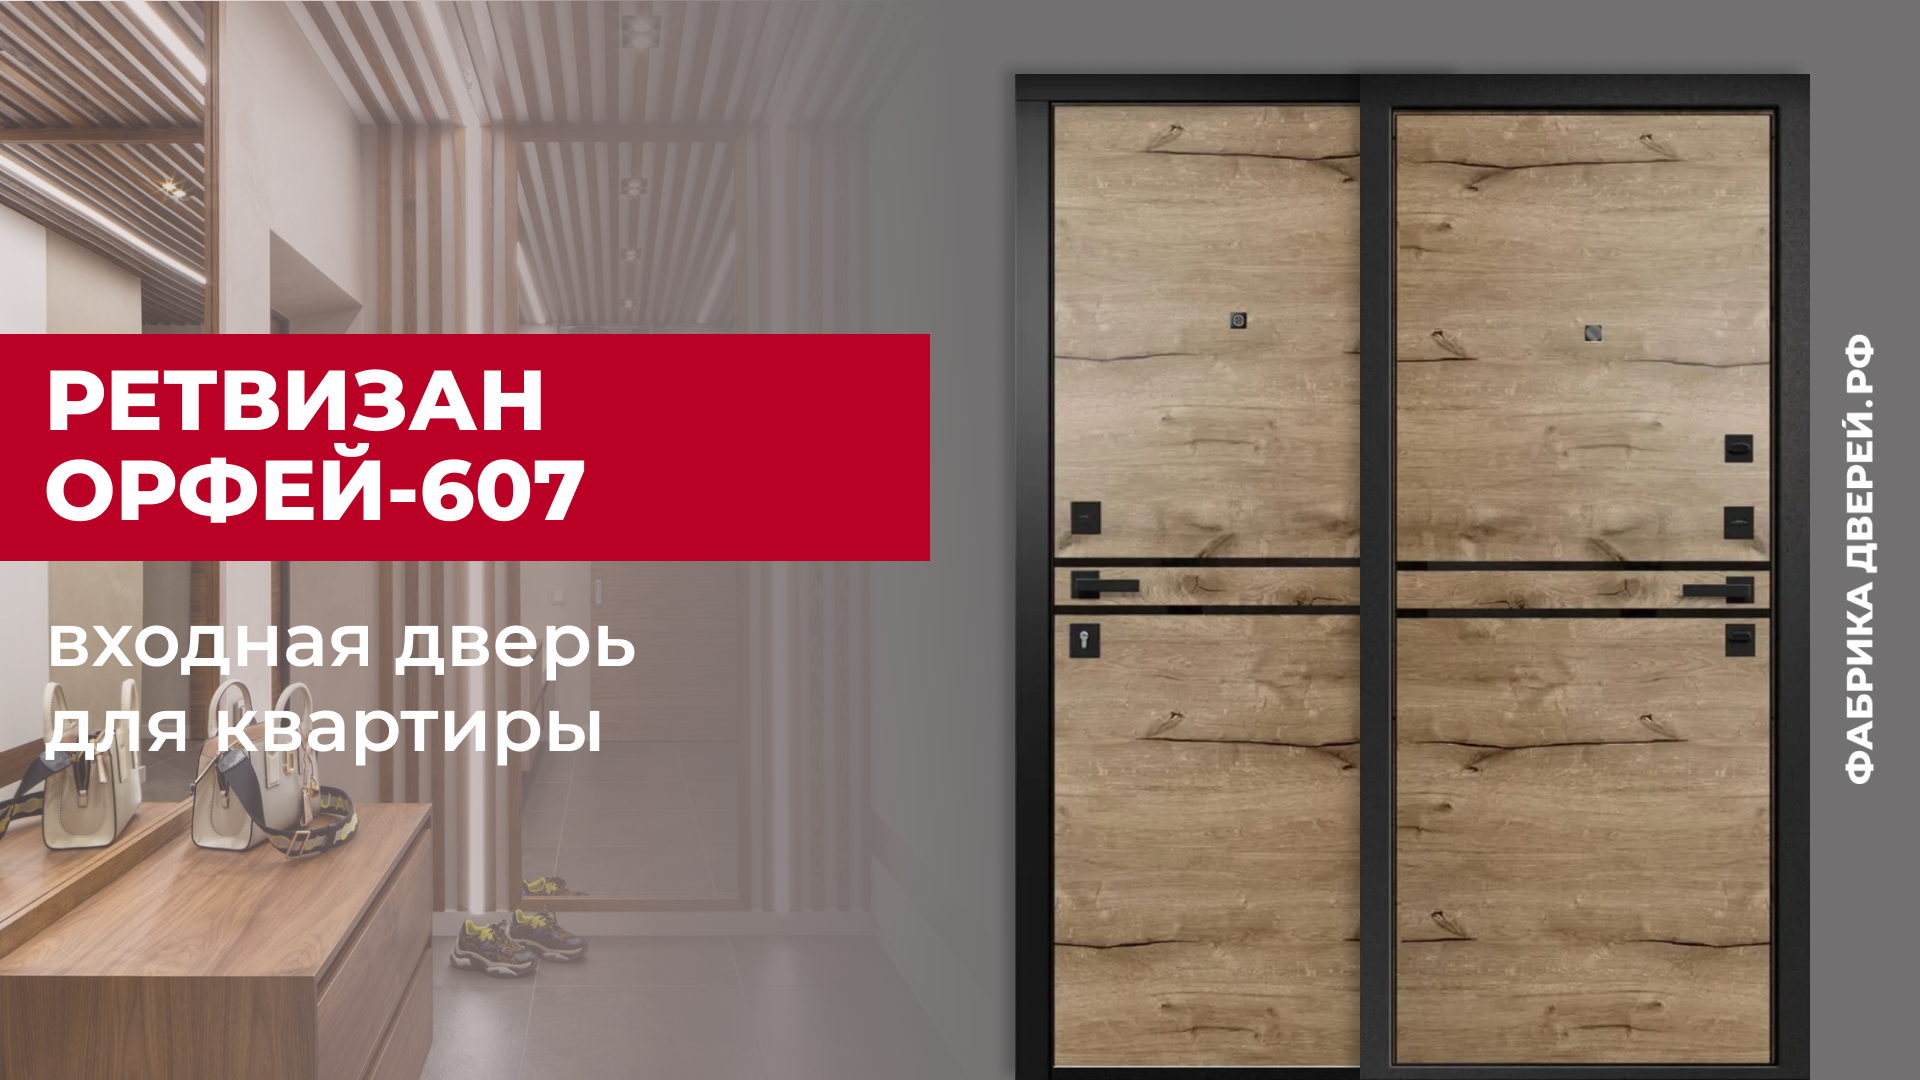 Входная дверь для квартиры Орфей-607 дуб пацифик с черной фурнитурой завода Ретвизан #двери #дом